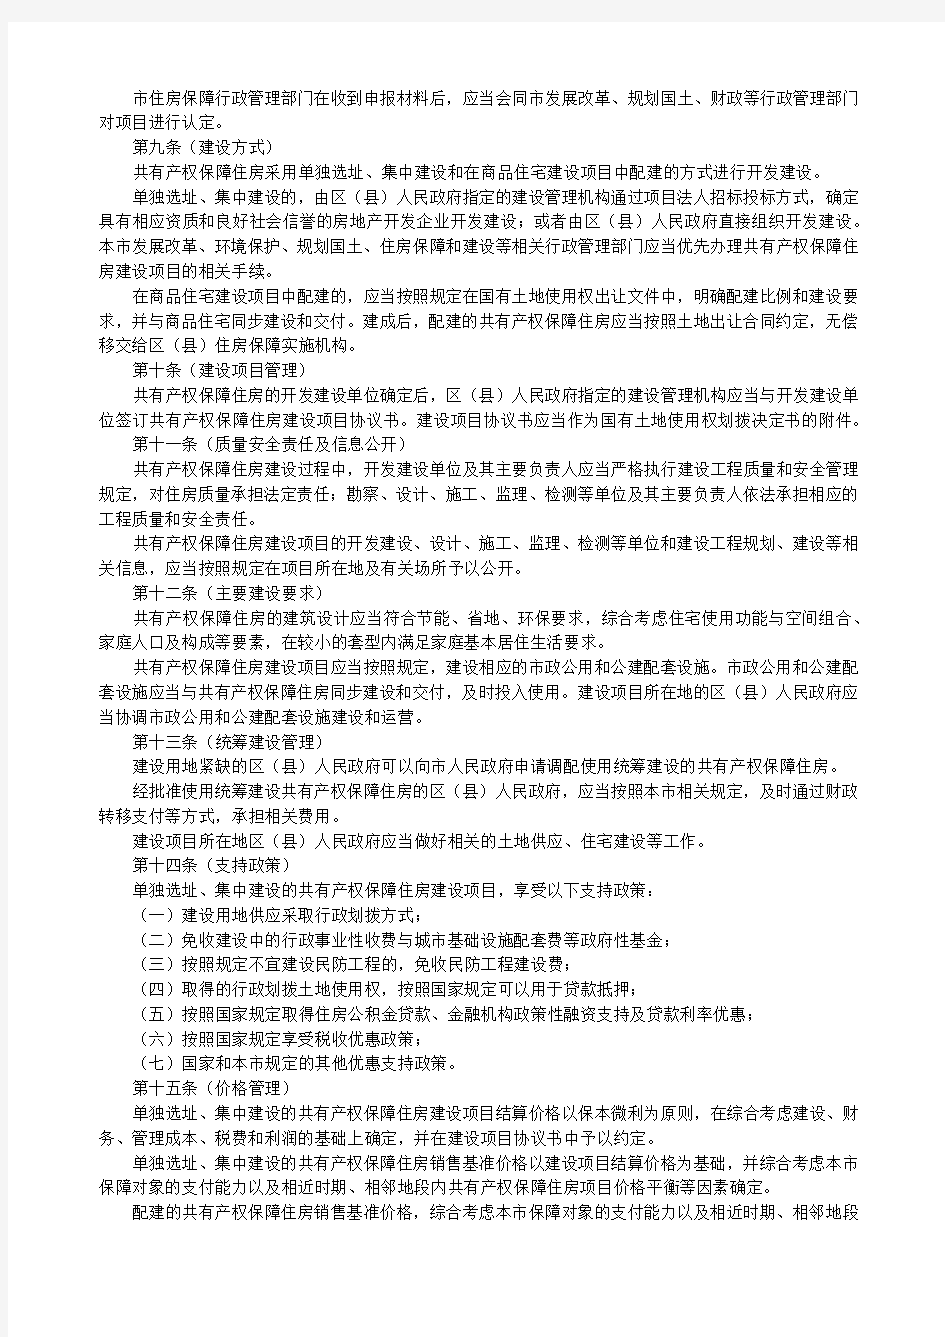 《上海市共有产权保障住房管理办法》(沪府令39号)